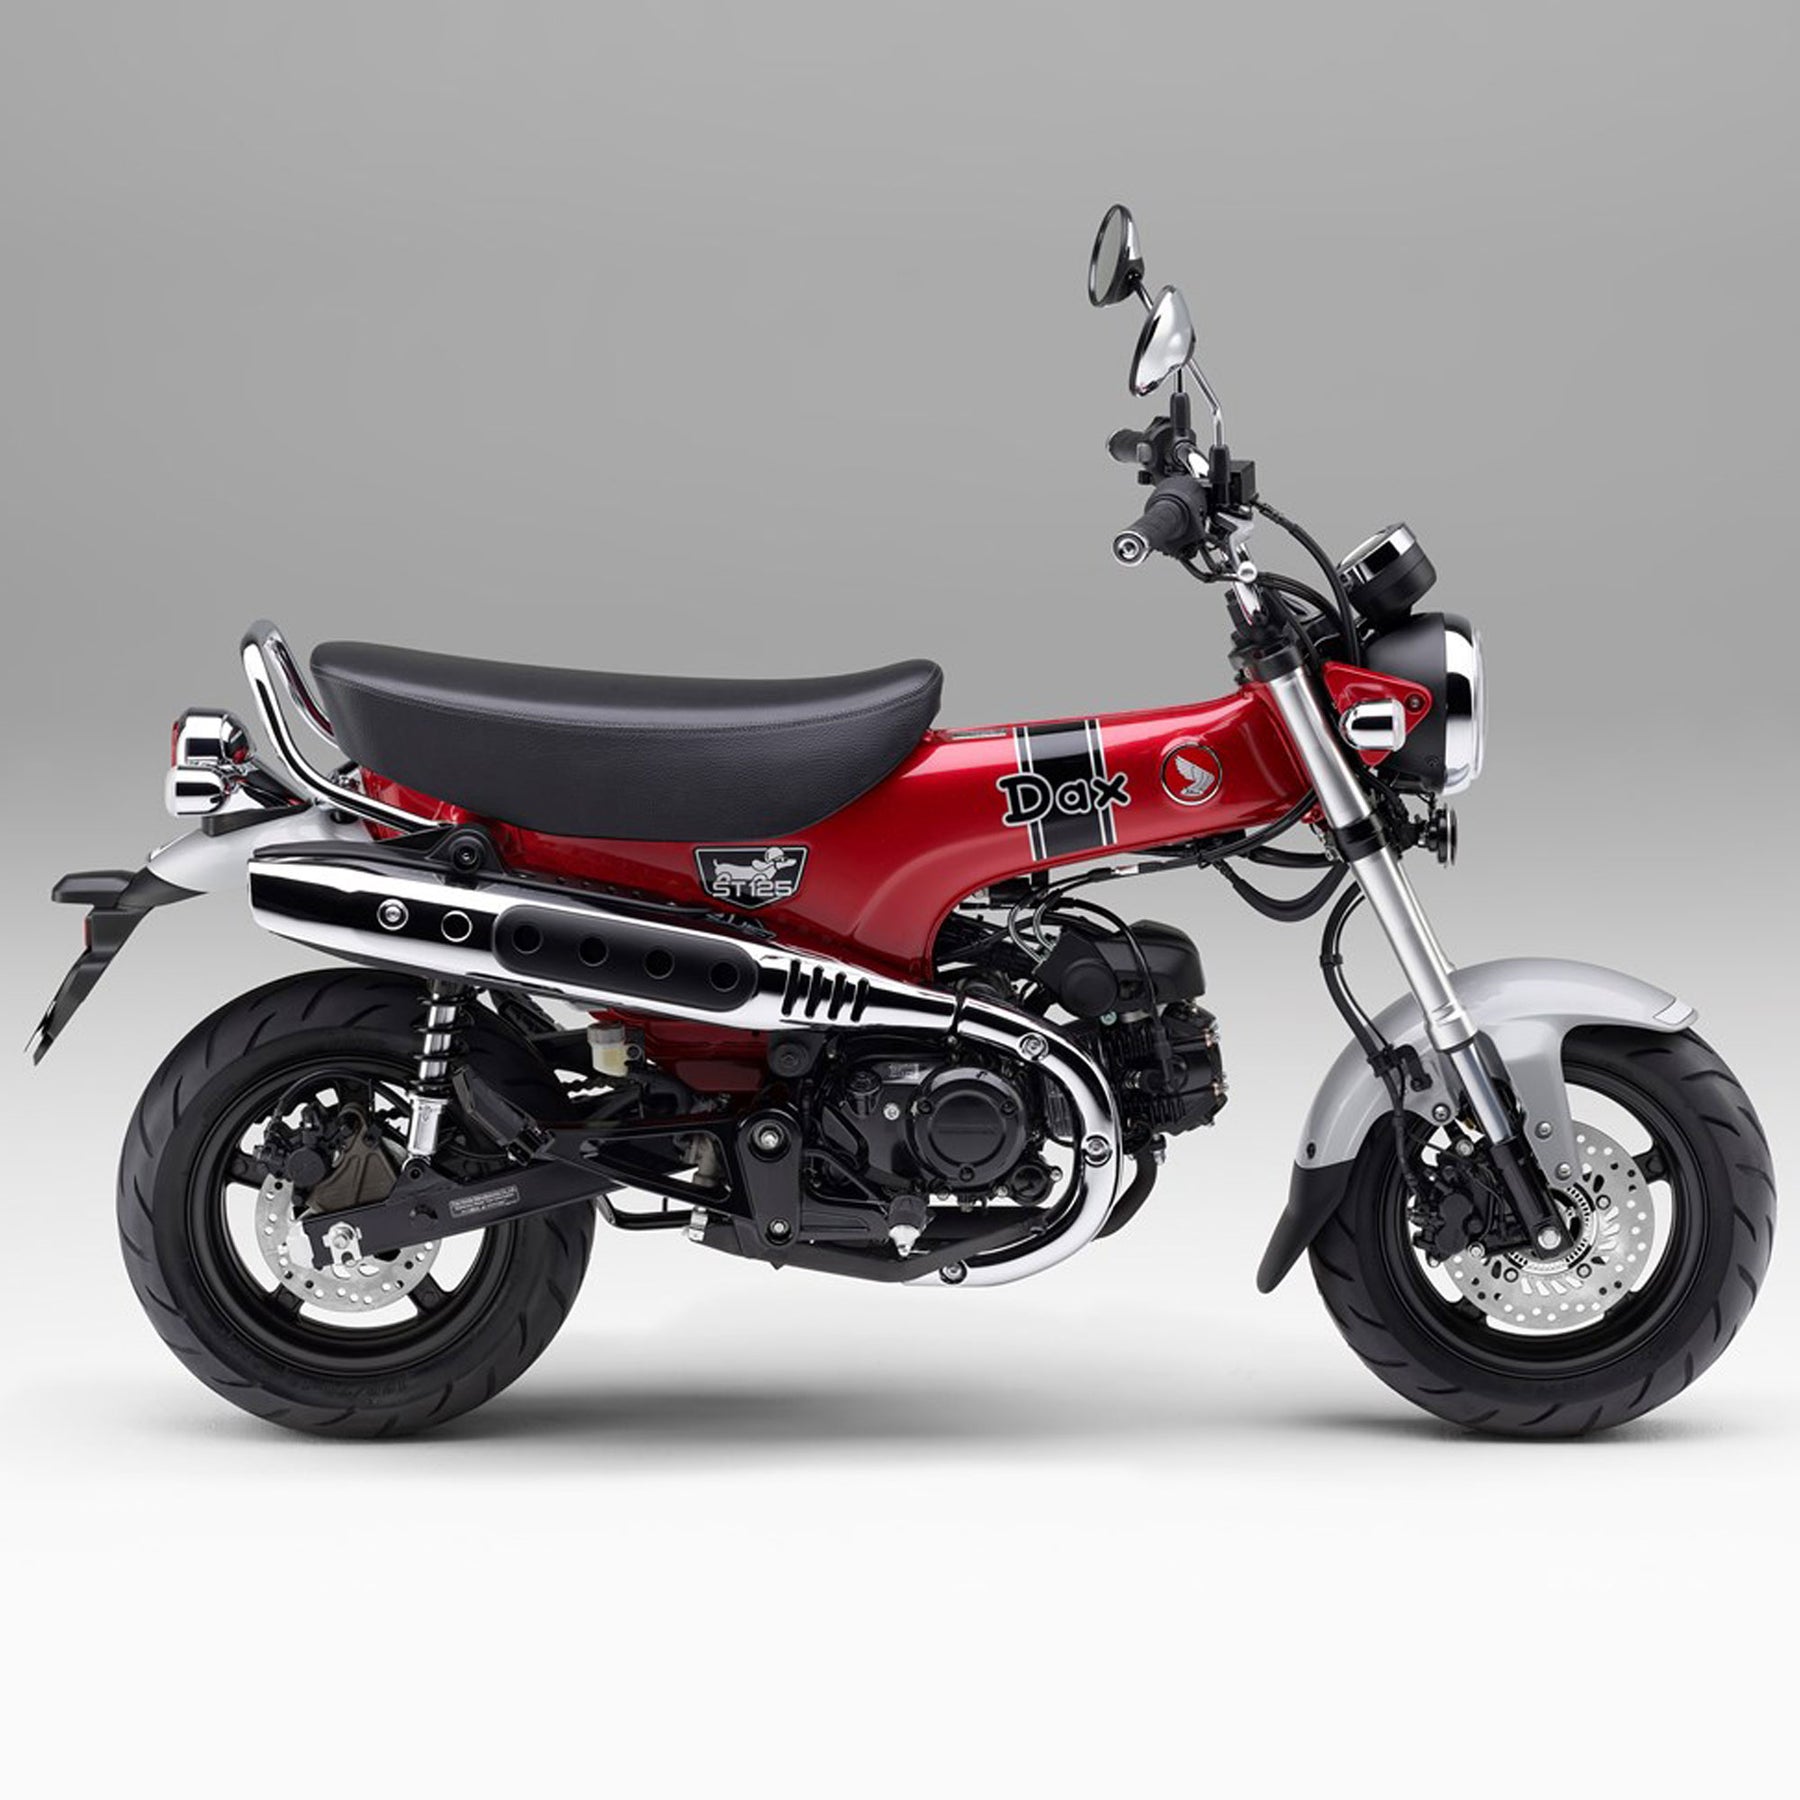 New Honda Bikes | 125cc | Bikes from Honda of Bournemouth | Dax125